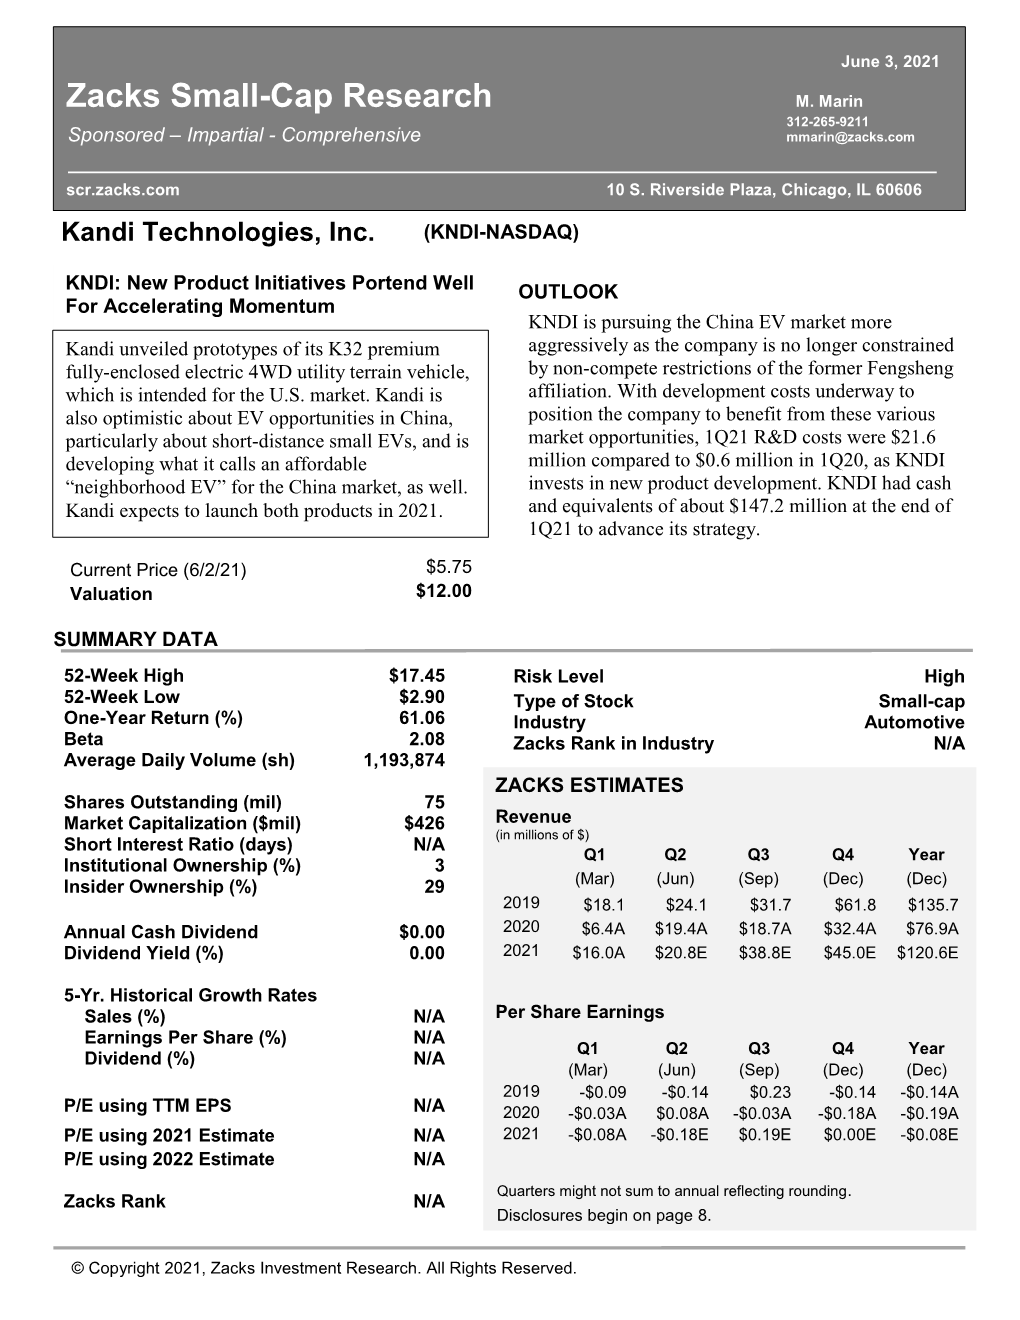 Kandi Technologies, Inc. (KNDI-NASDAQ)